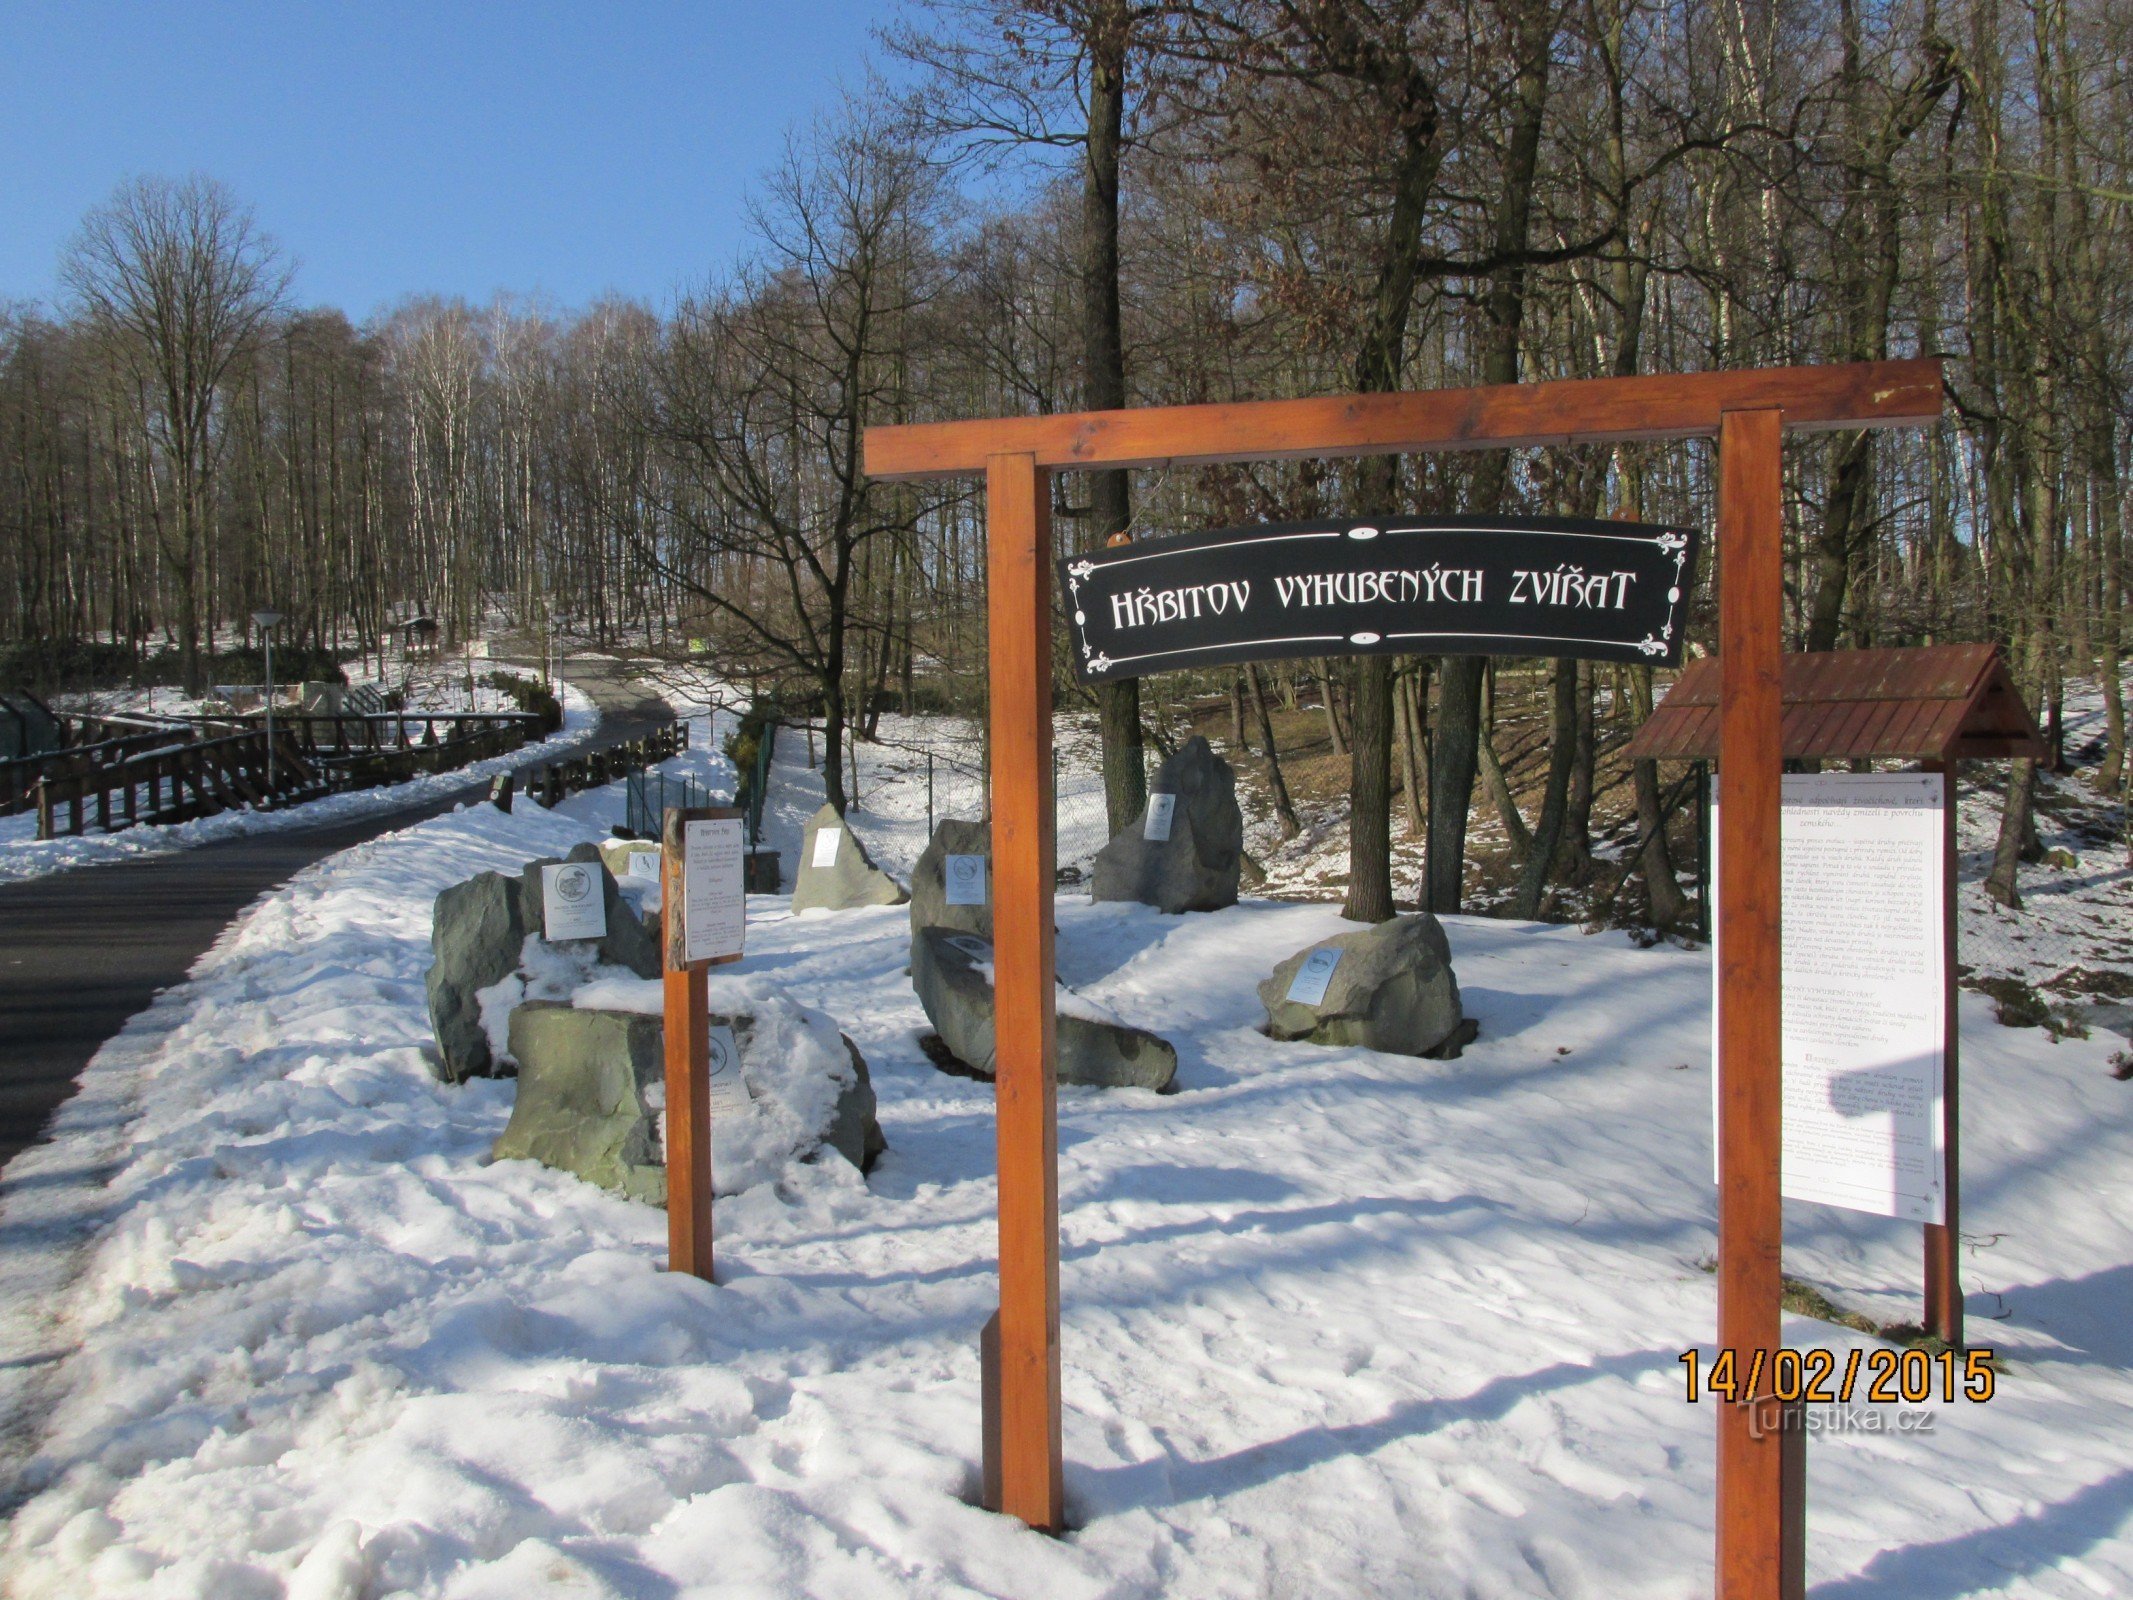 Cemetery of extinct animals in Ostrava ZOO